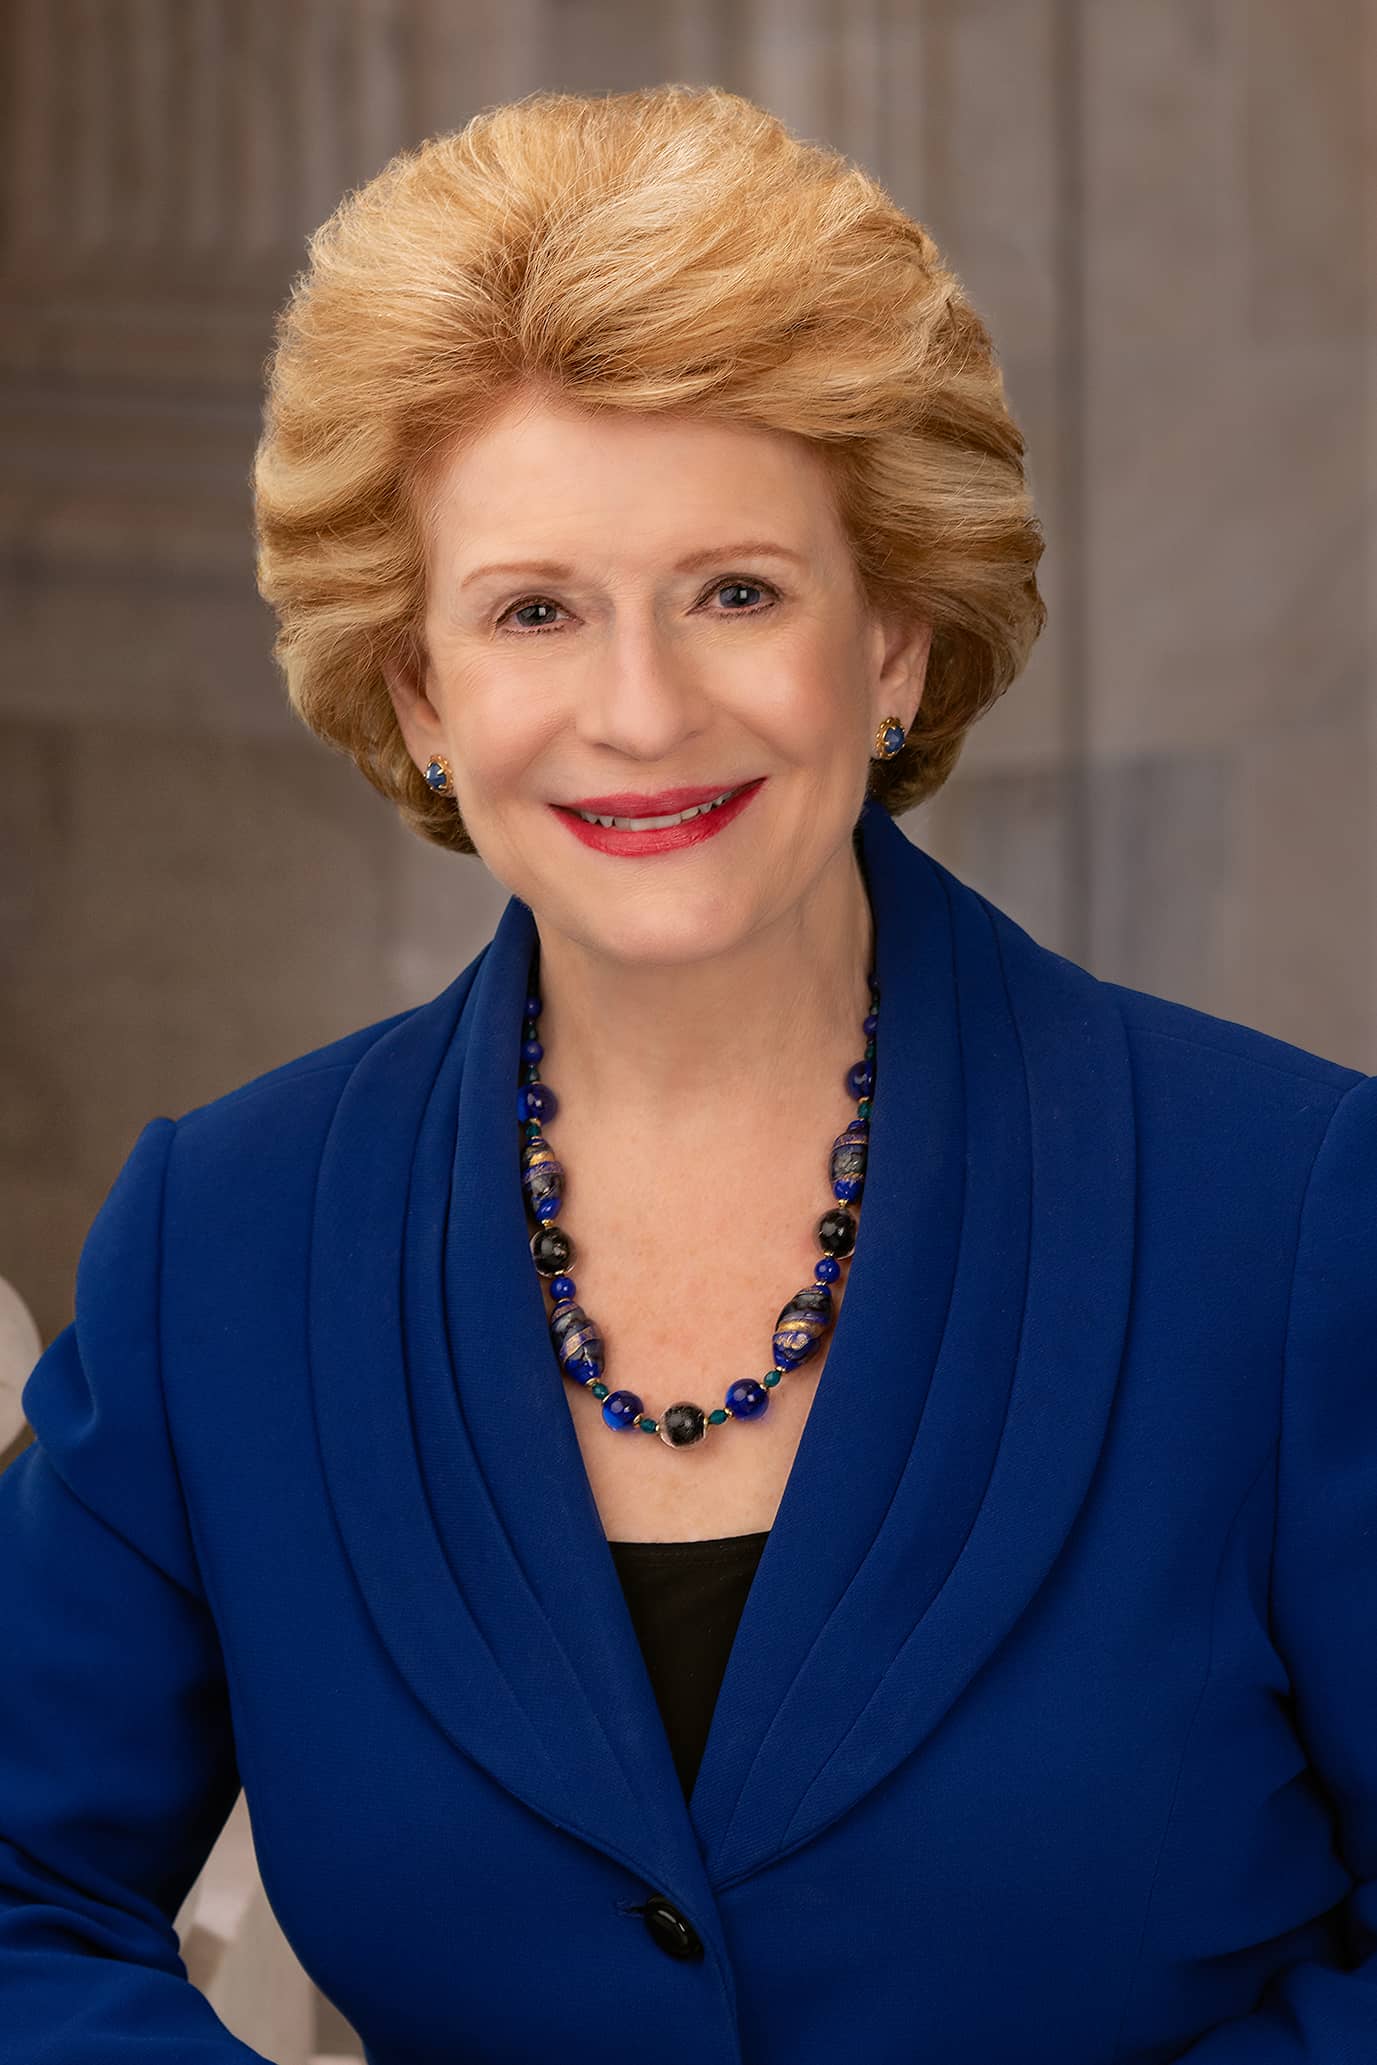 U.S. Sen. Debbie Stabenow